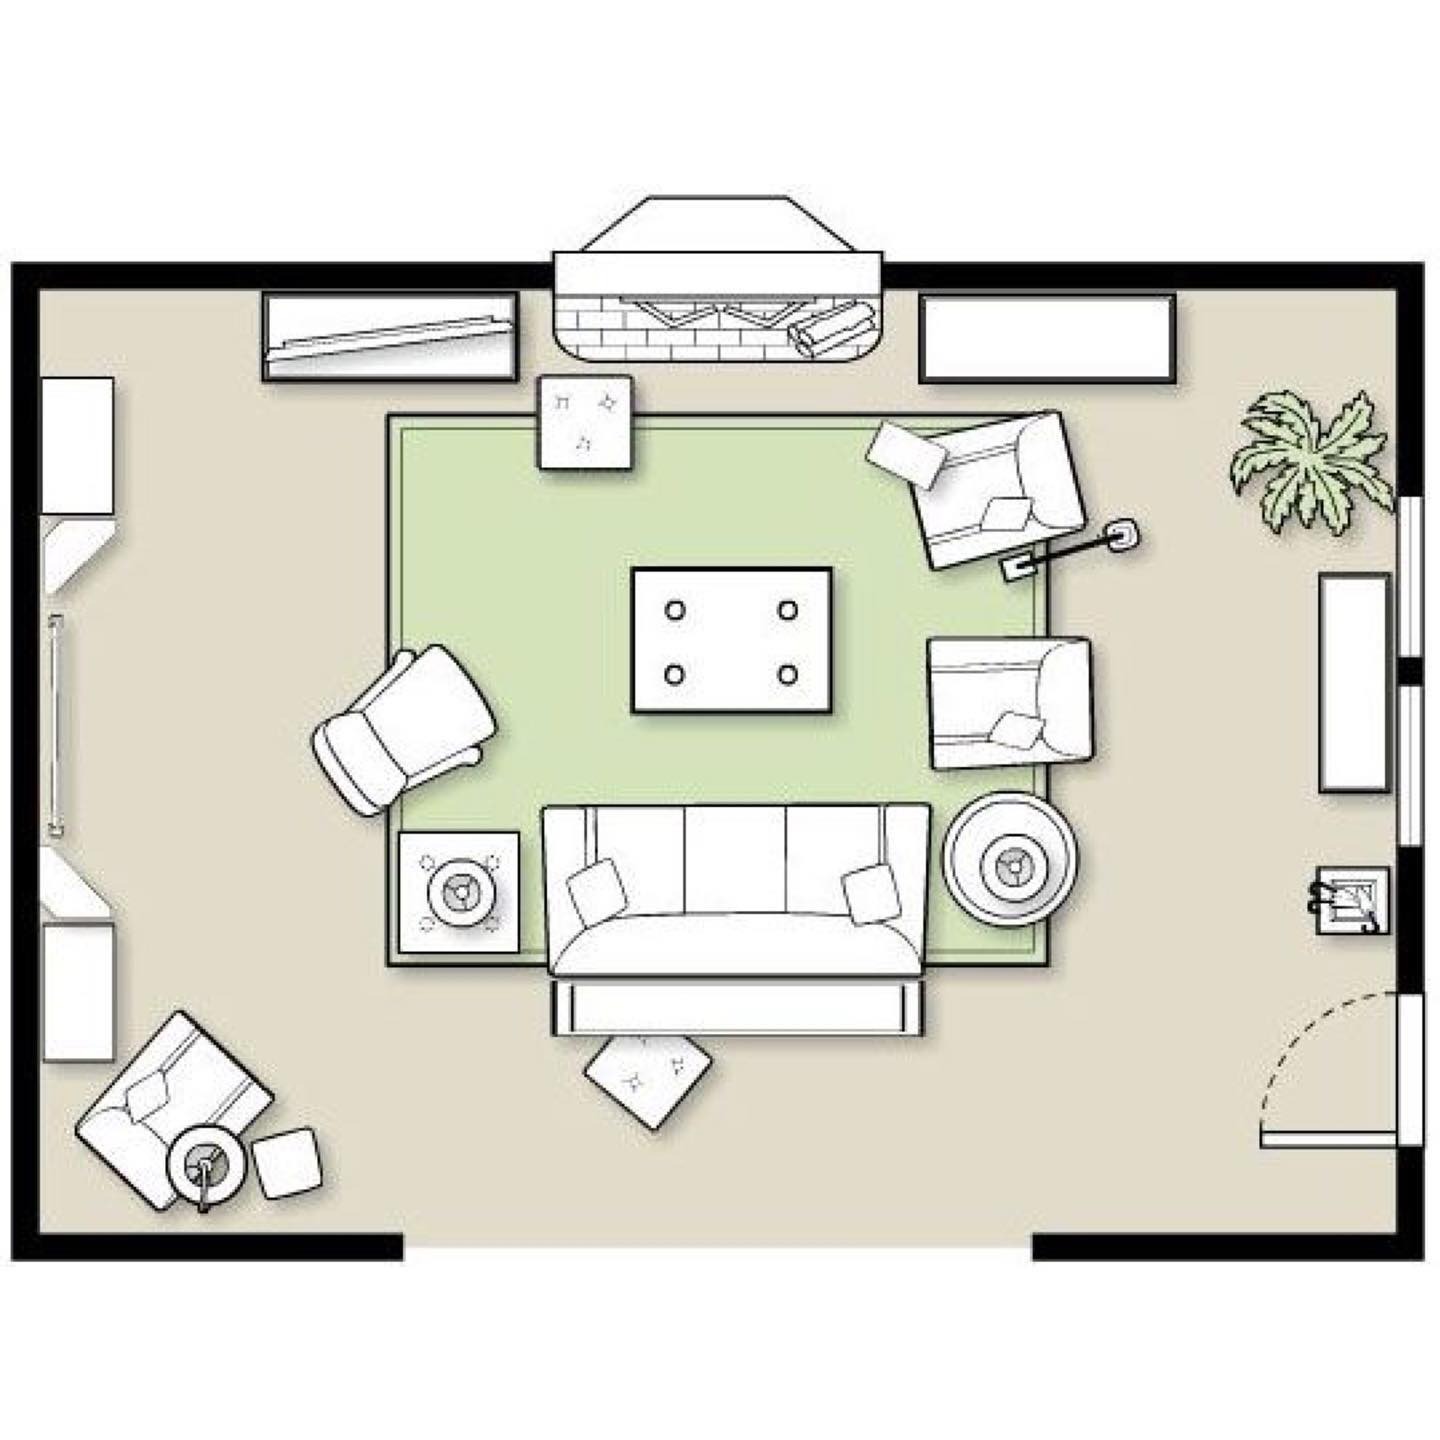 Рисунок план комнаты с мебелью вид сверху рисунок